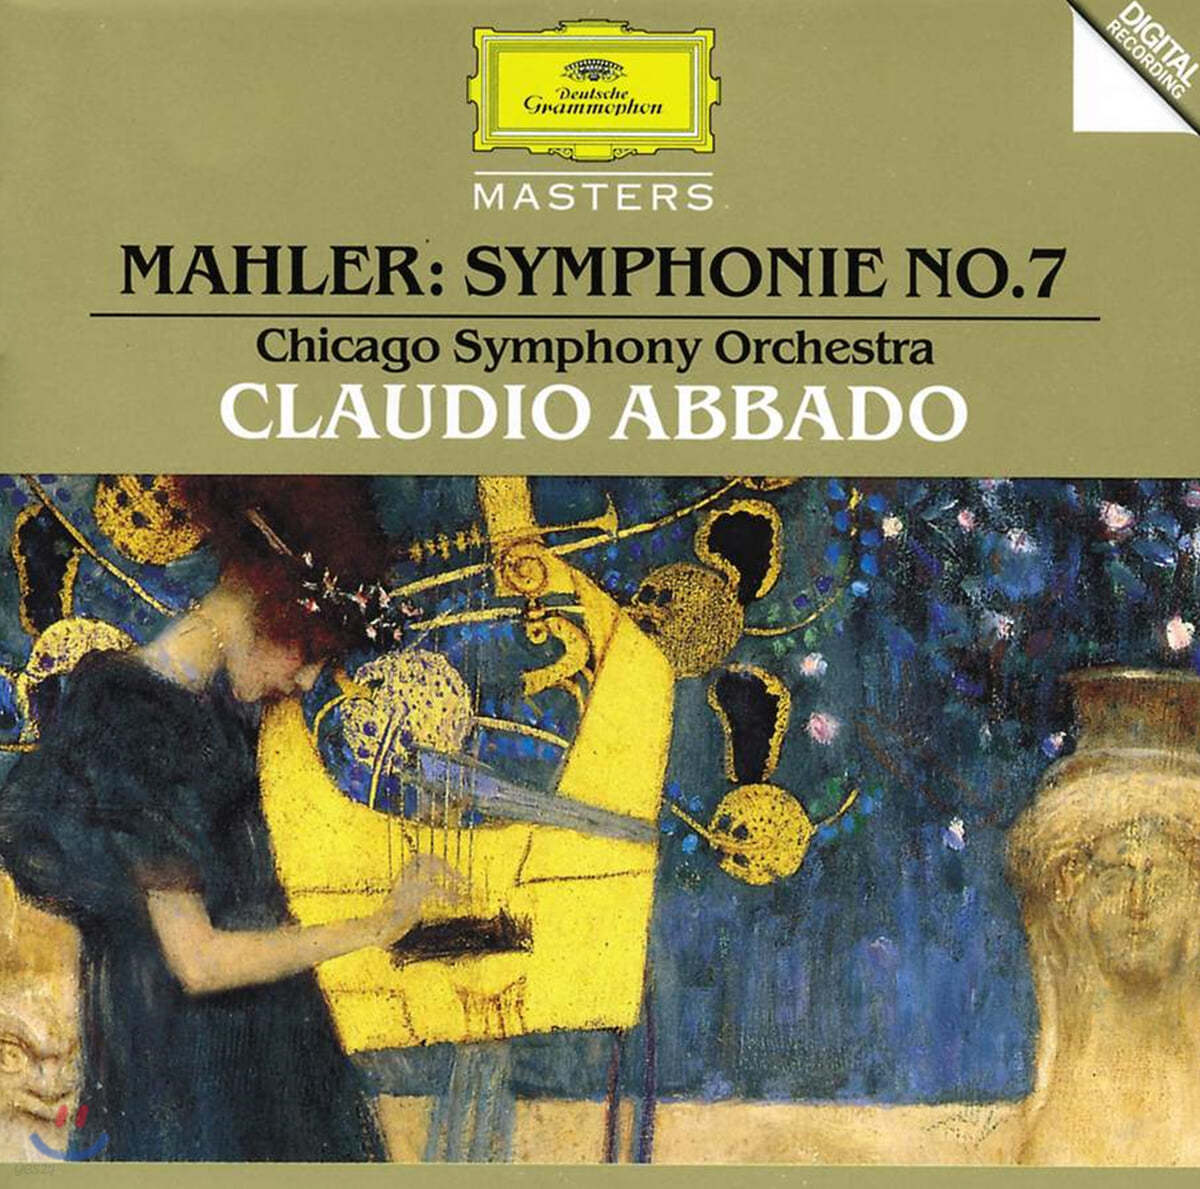 Claudio Abbado 말러: 교향곡 7번 (Mahler: Symphony No. 7)